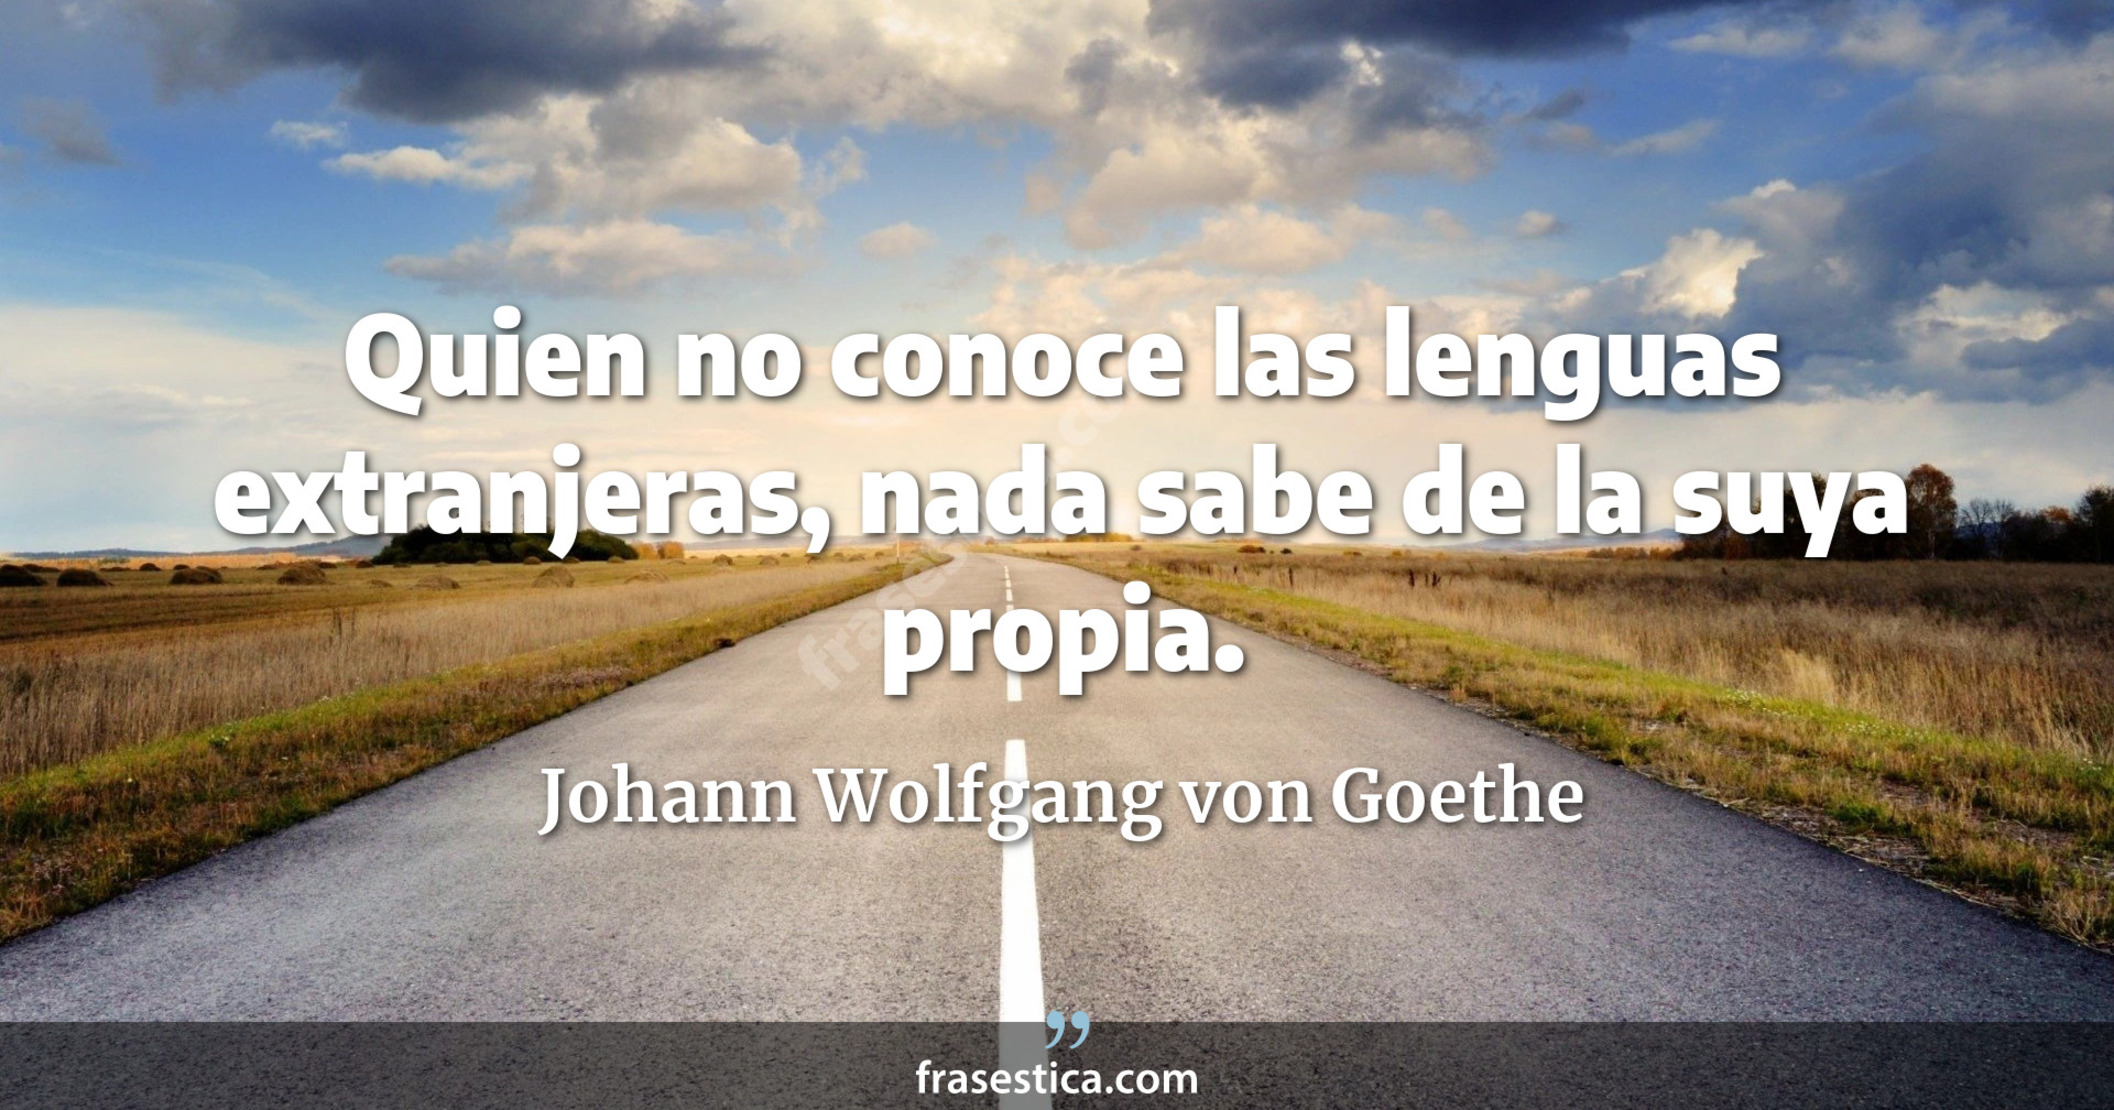 Quien no conoce las lenguas extranjeras, nada sabe de la suya propia. - Johann Wolfgang von Goethe